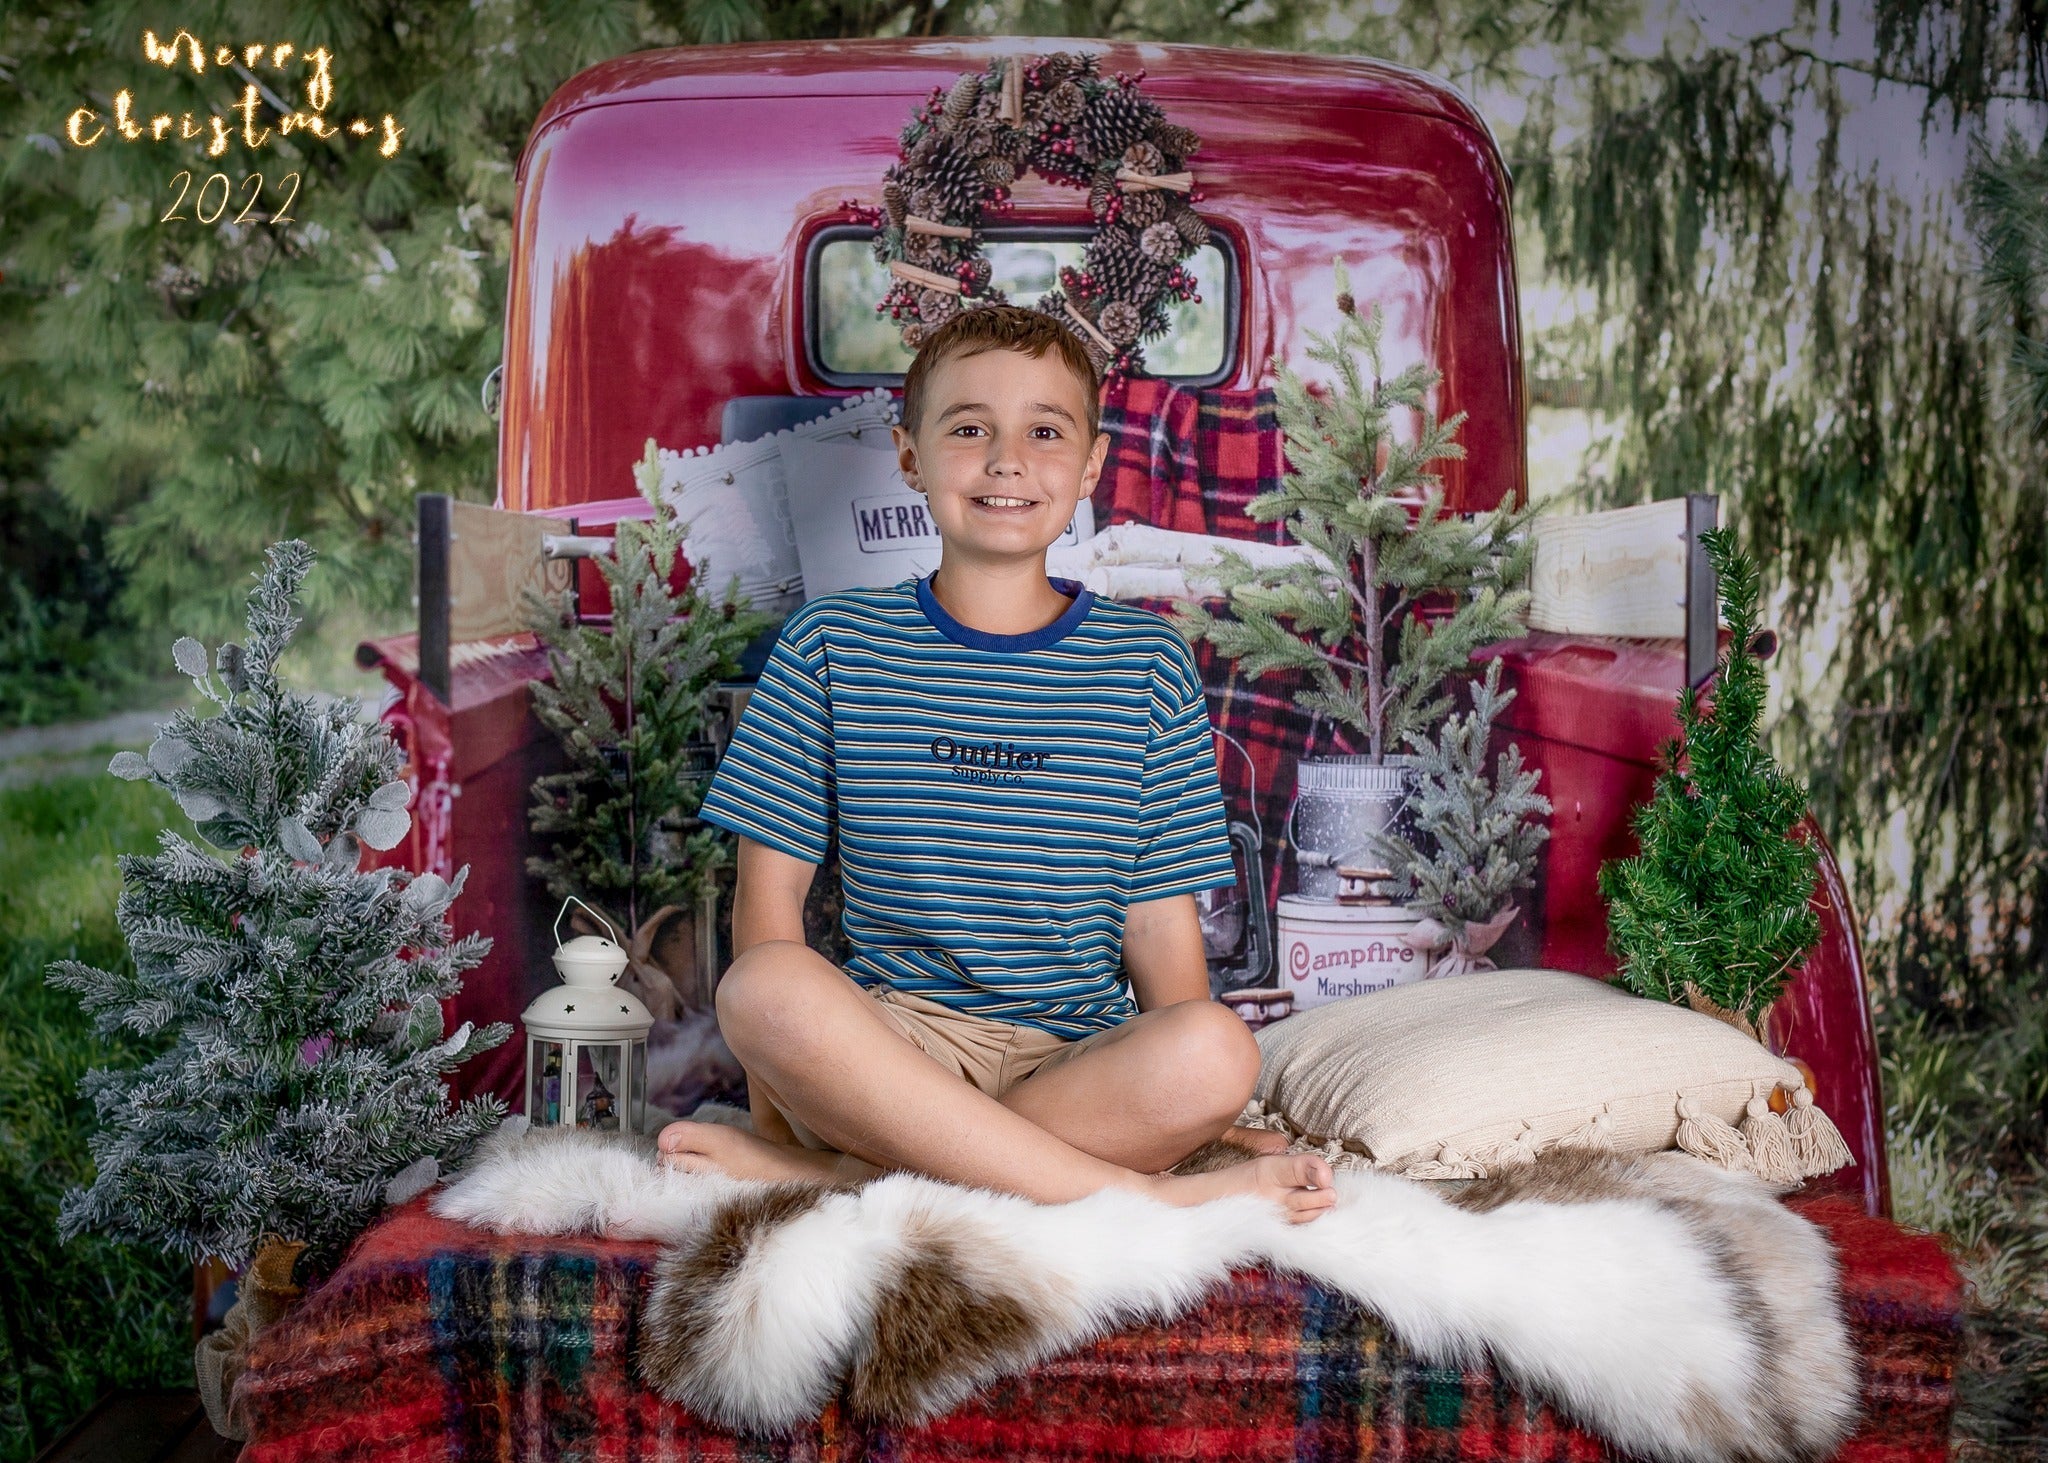 Sfondo RTS Rosso con Camion di Natale Progettato da Mandy Ringe Photography